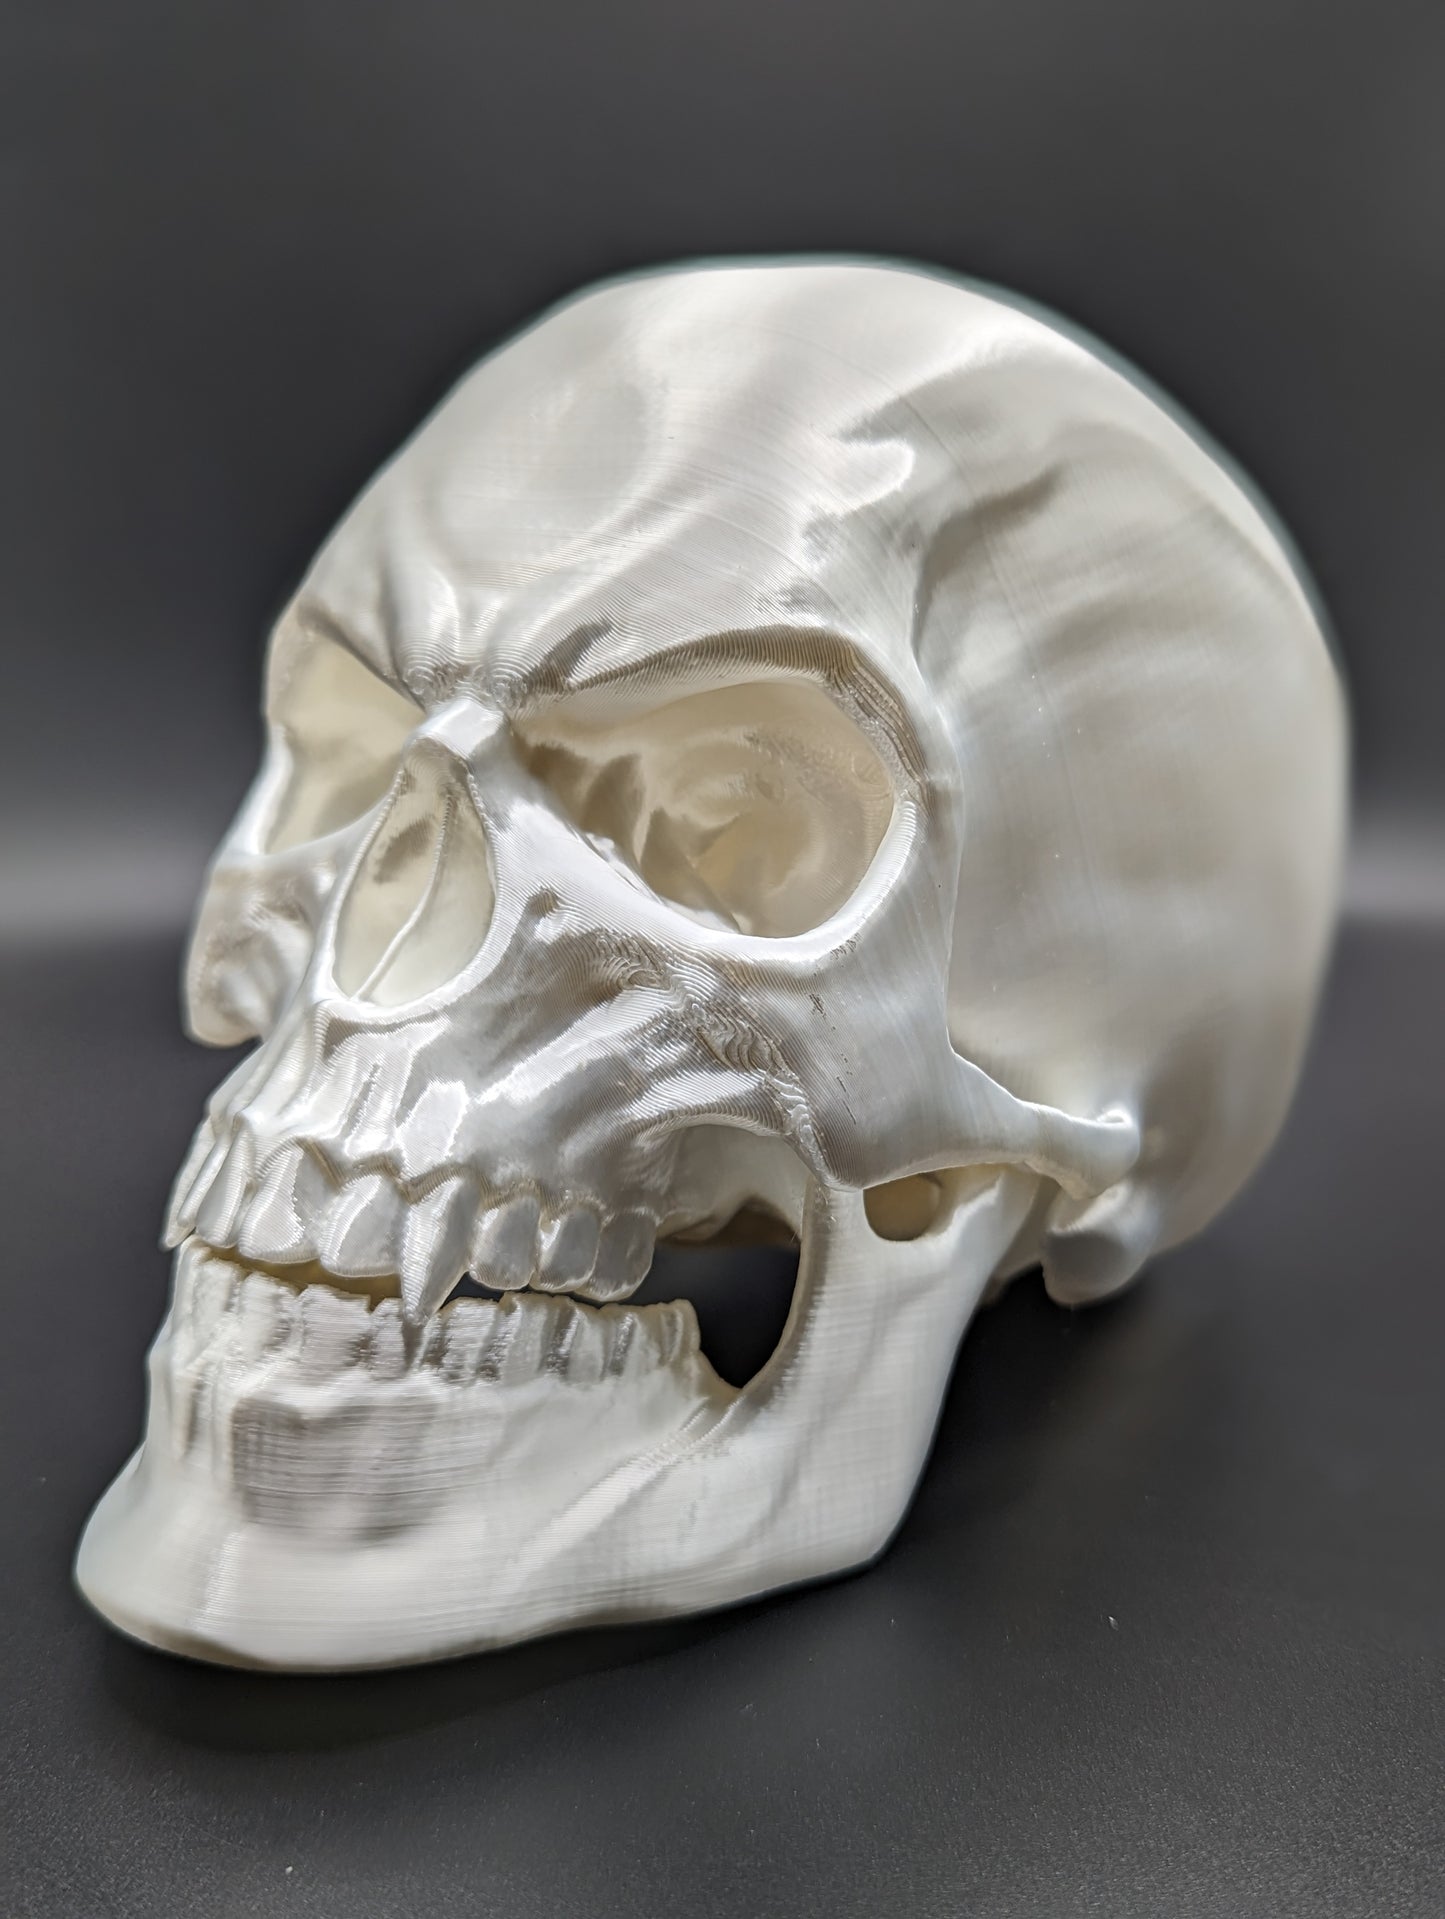 Articulating Skull